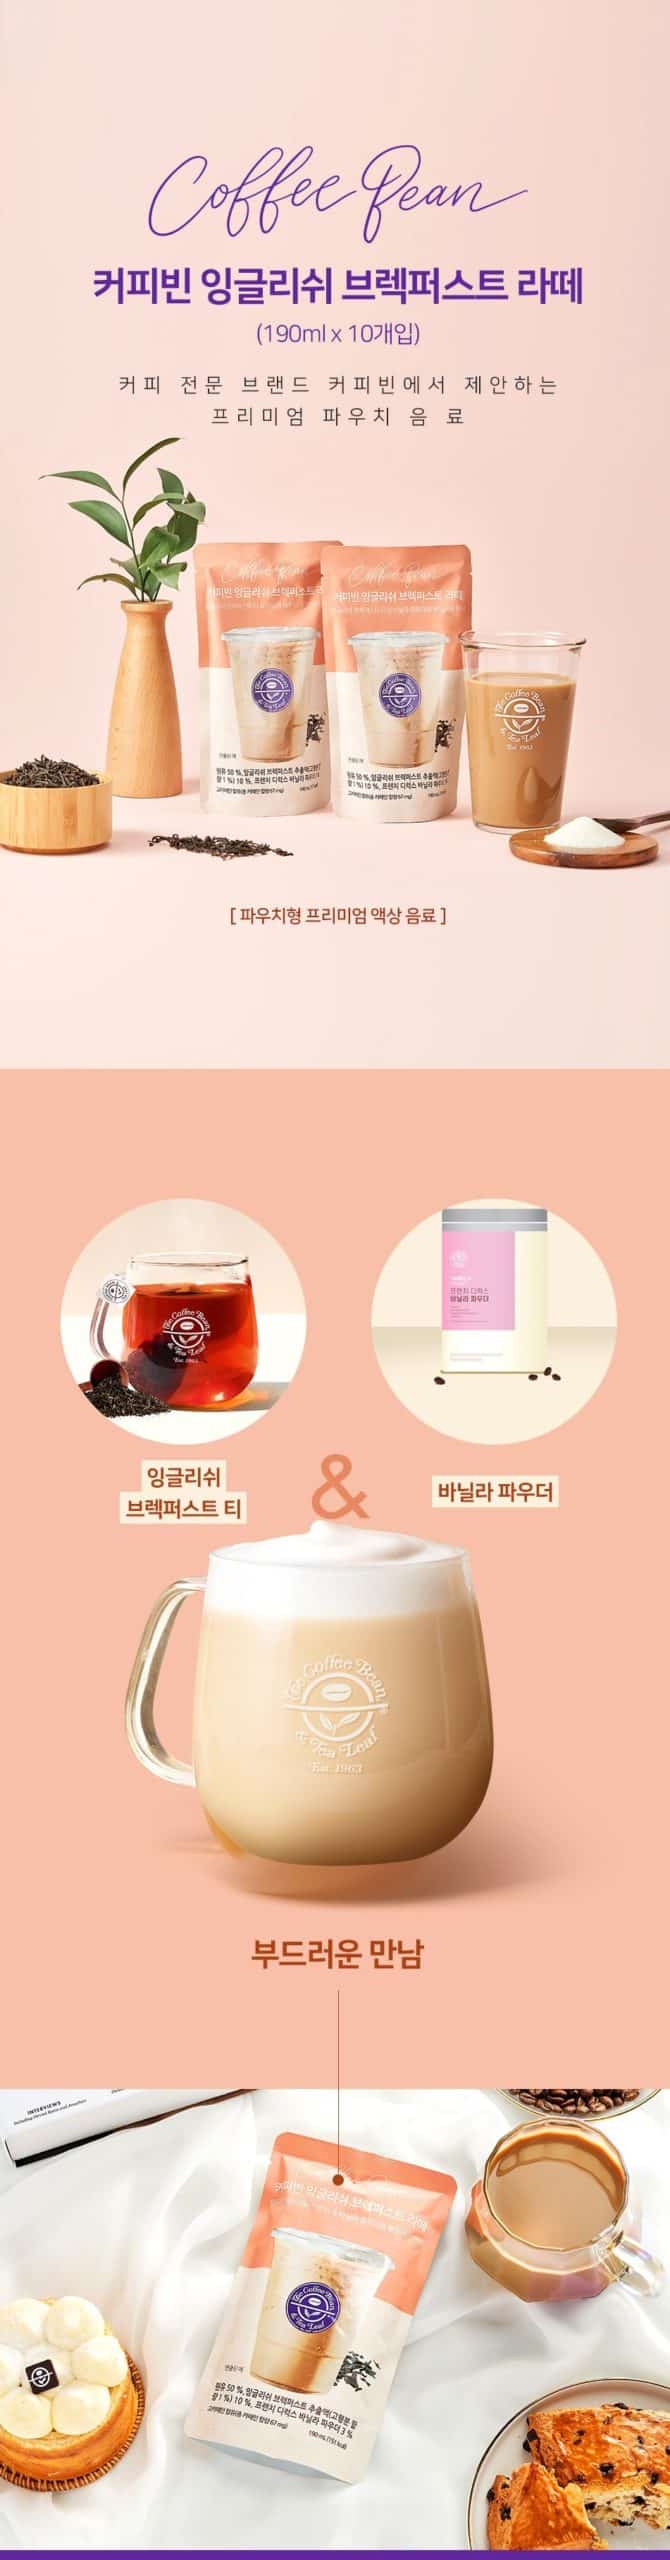 韓國食品-[커피빈] 잉글리쉬 브렉퍼스트 라떼 190ml